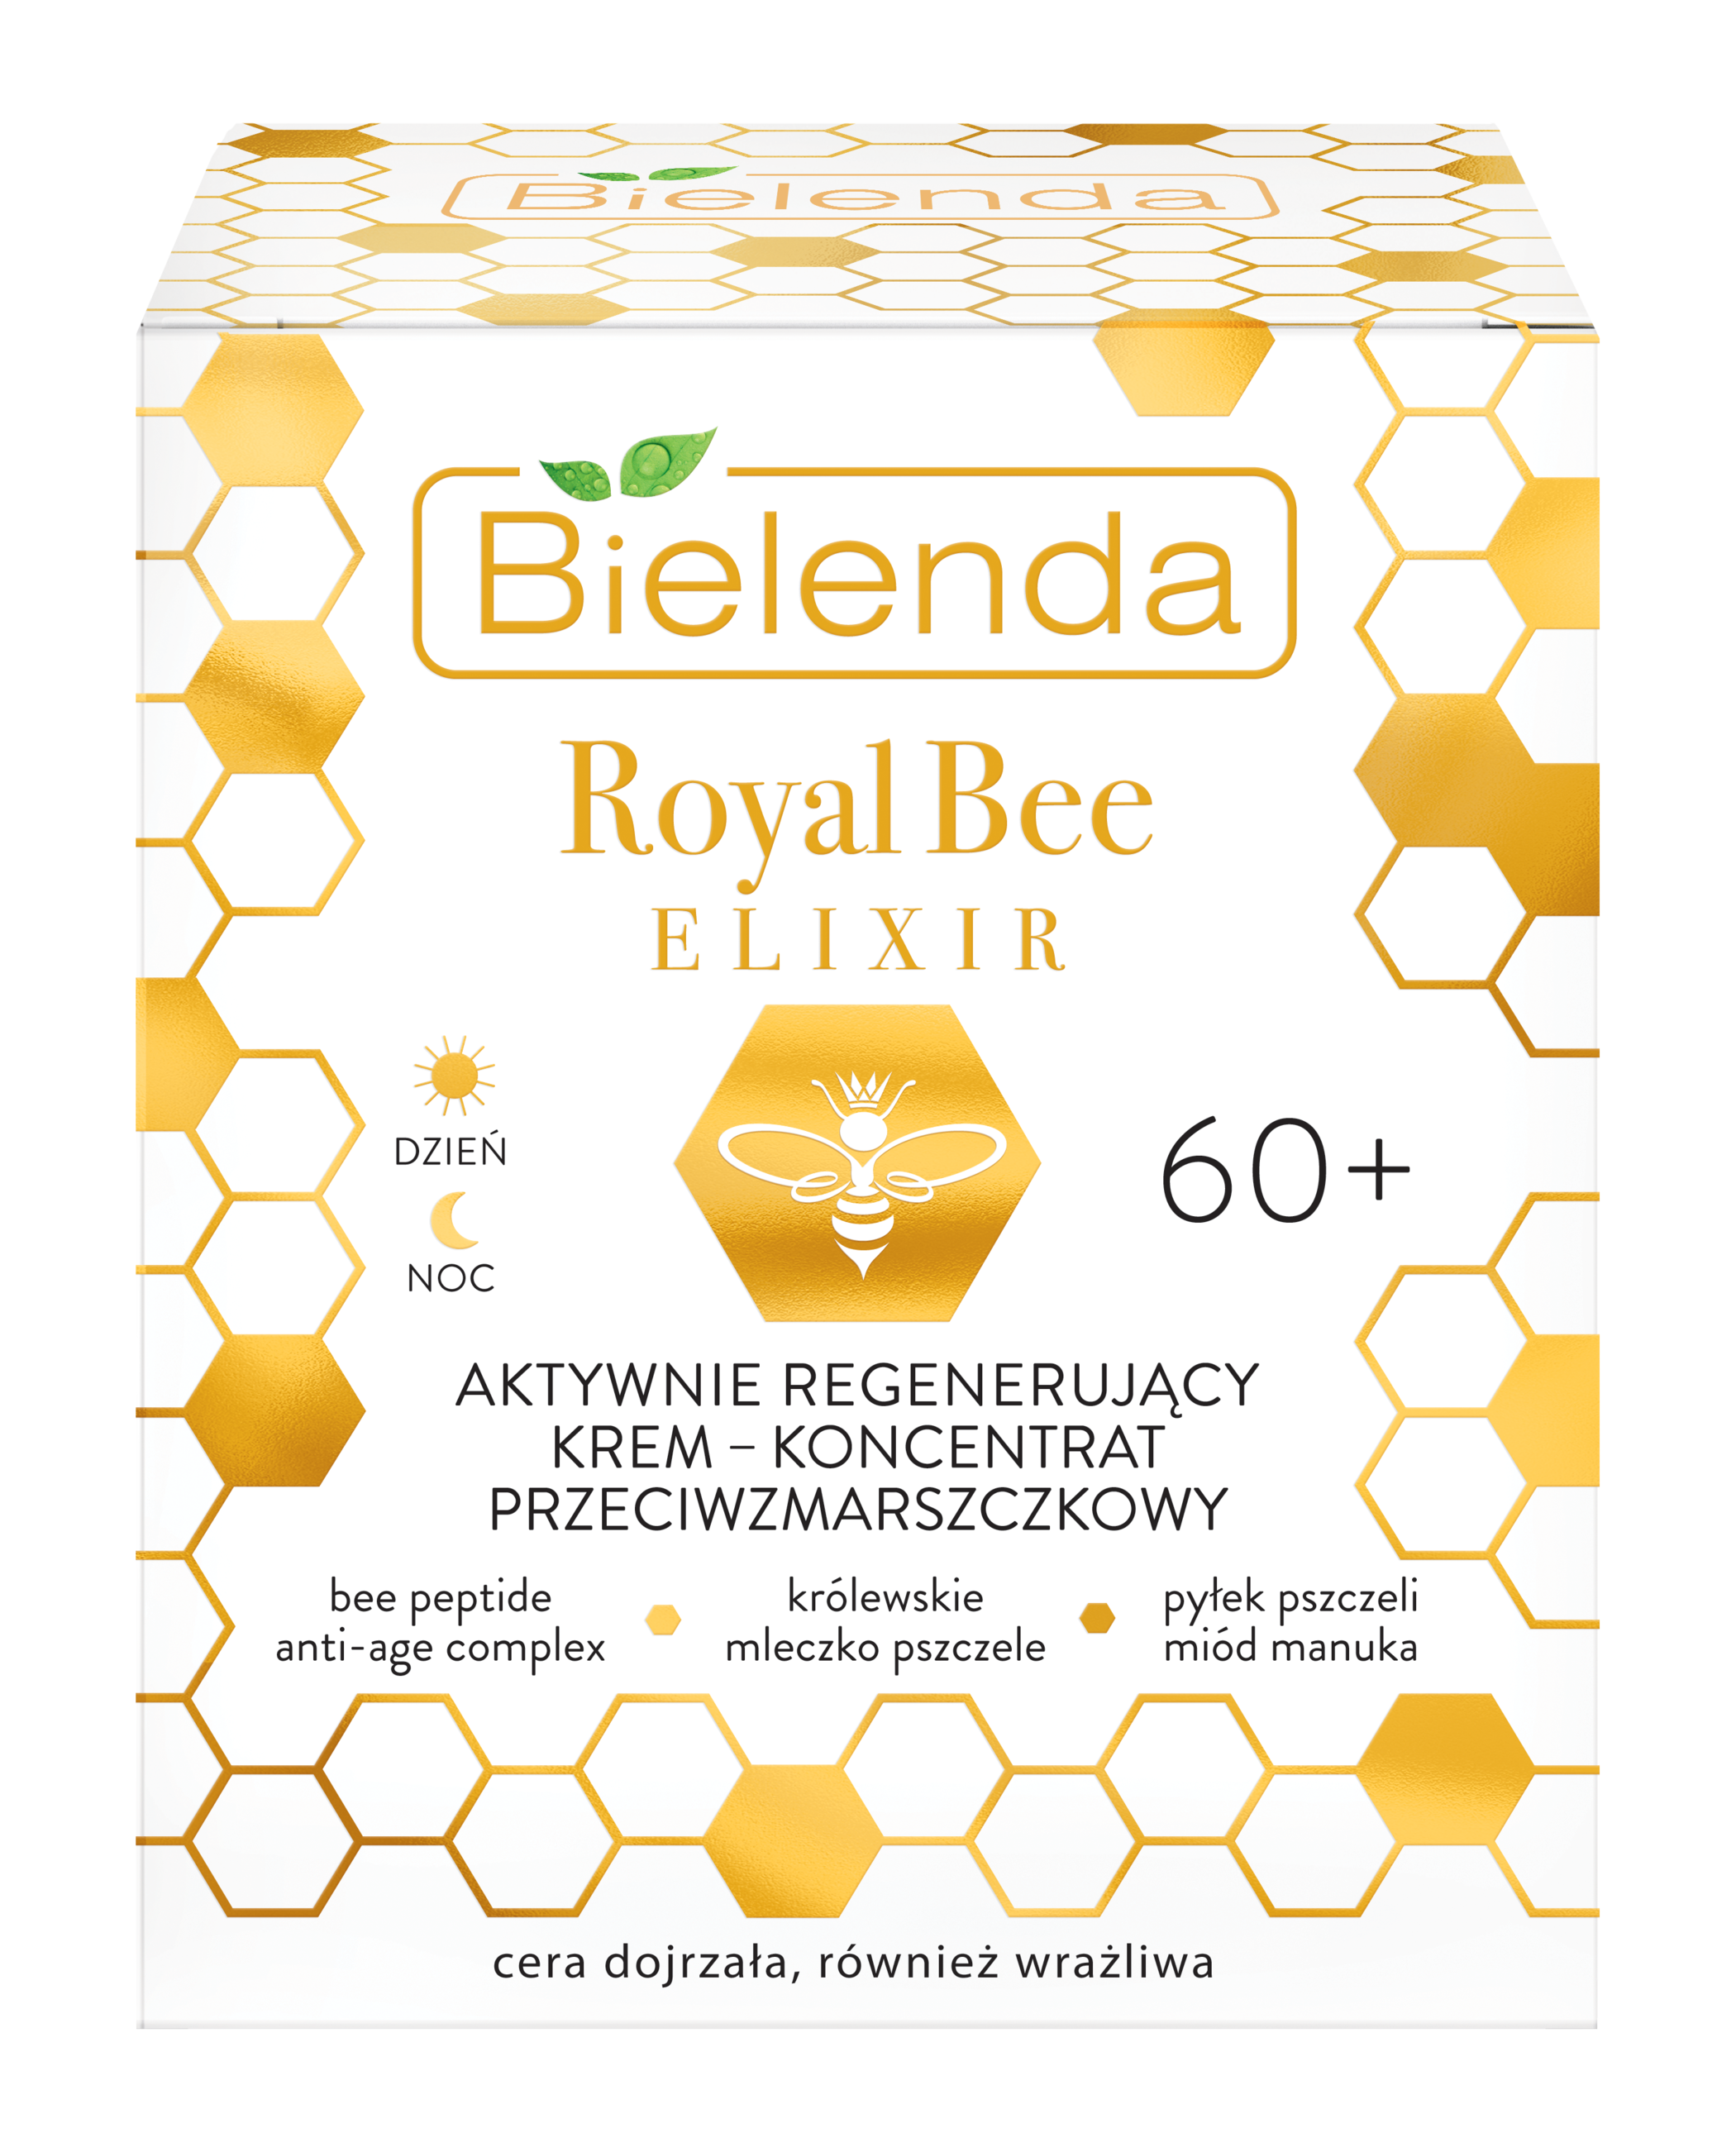 Bielenda Royal Bee Elixir aktywnie regenerujący krem-koncentrat przeciwzmarszczkowy 60+, 50ml